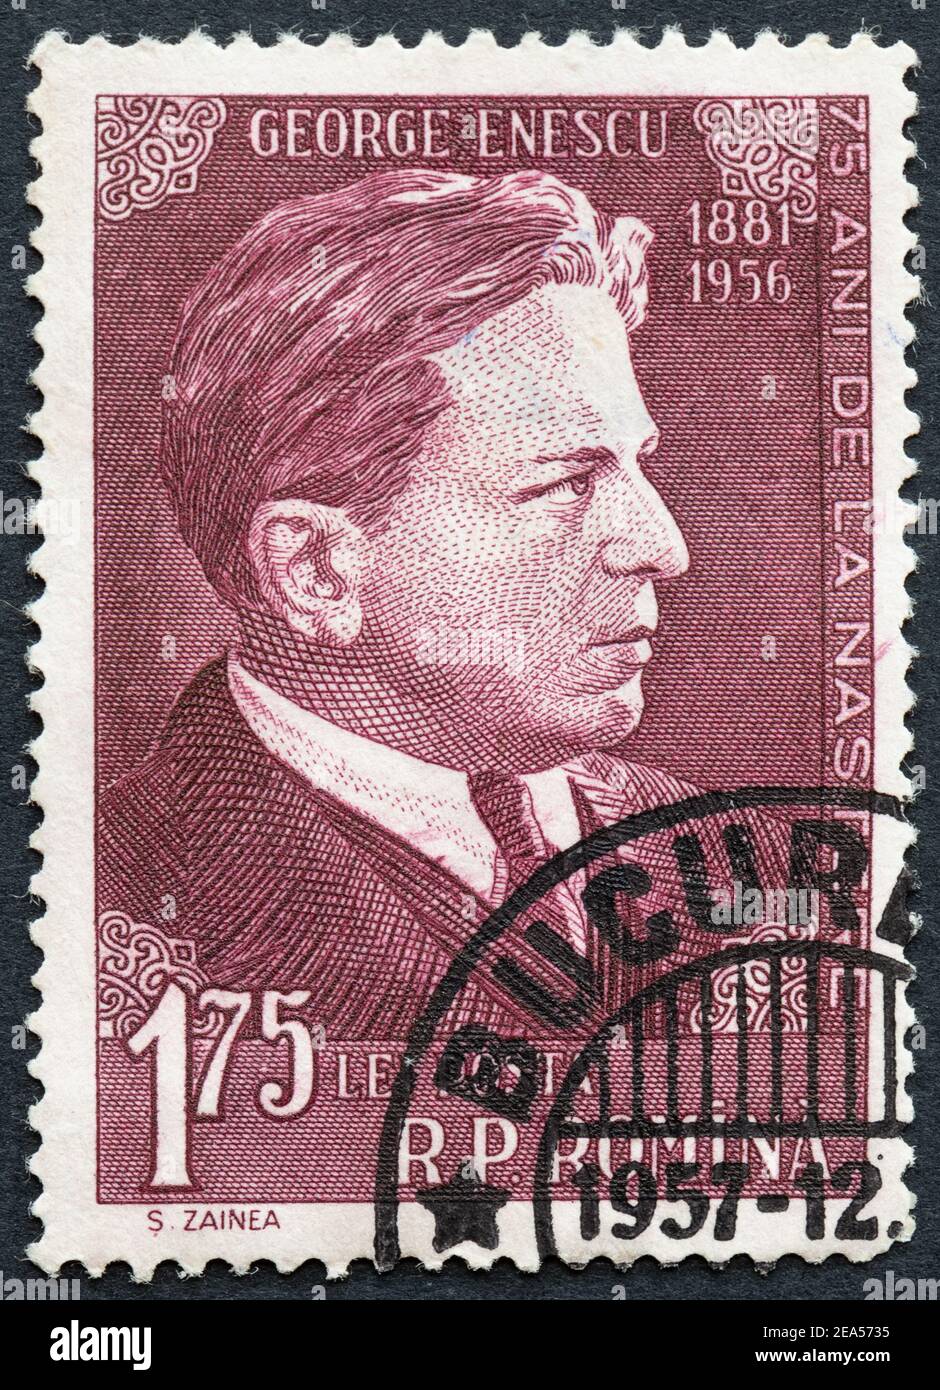 George Enescu Romanian musician - Romanian 175 Lei postage stamp Stock Photo